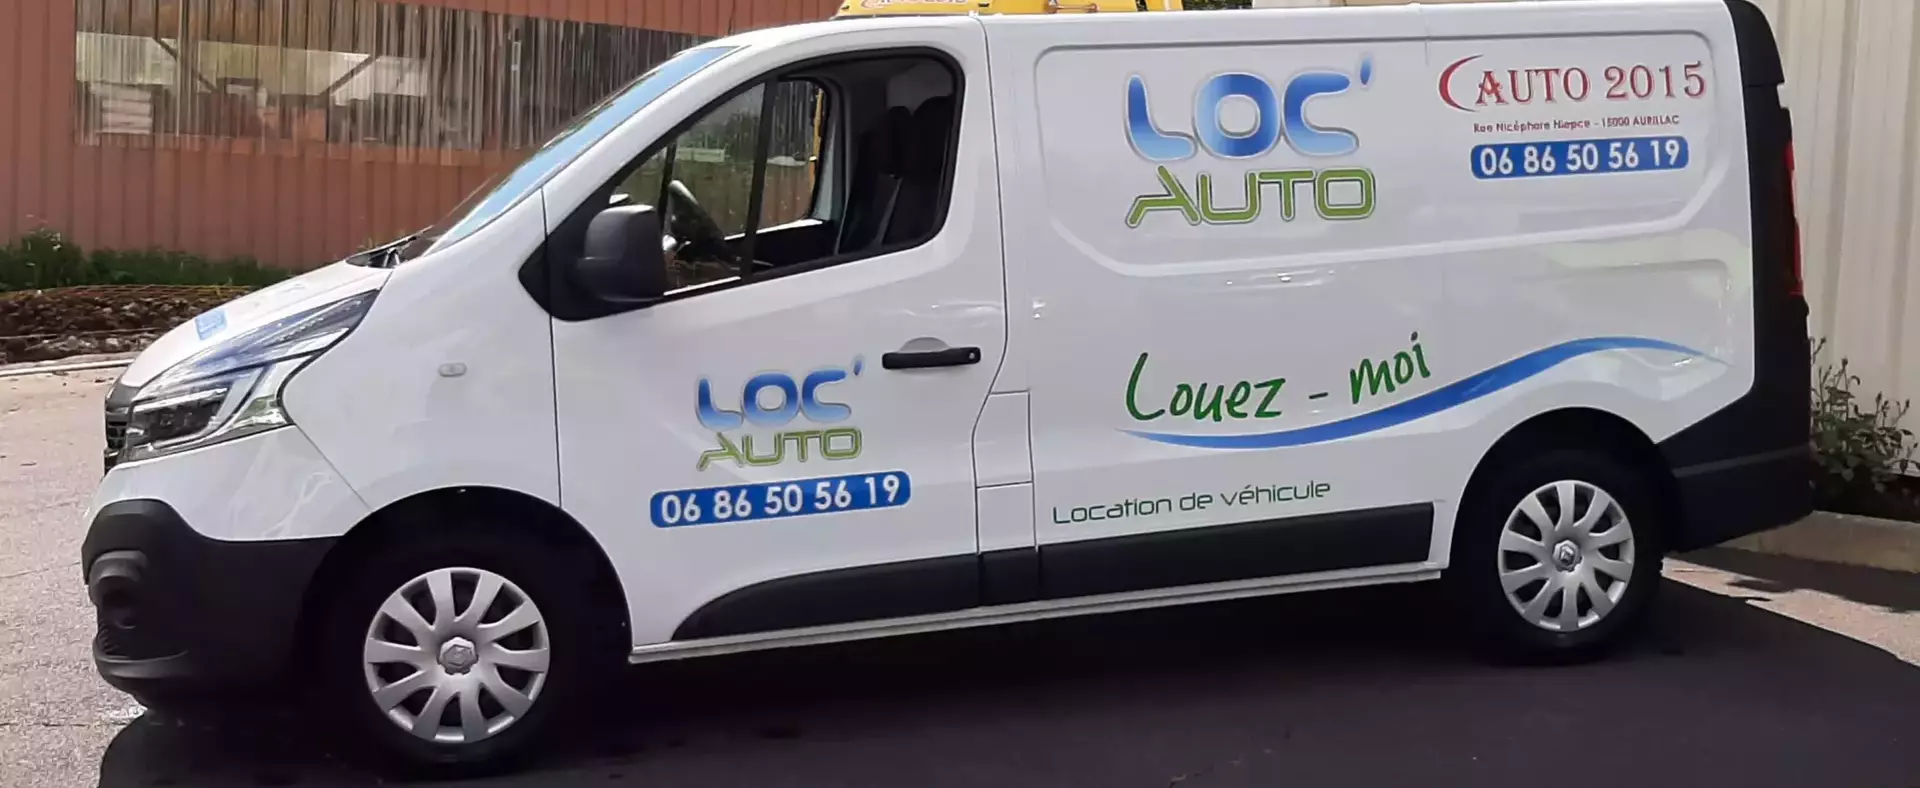 Location voiture à Aurillac - Auto 2015